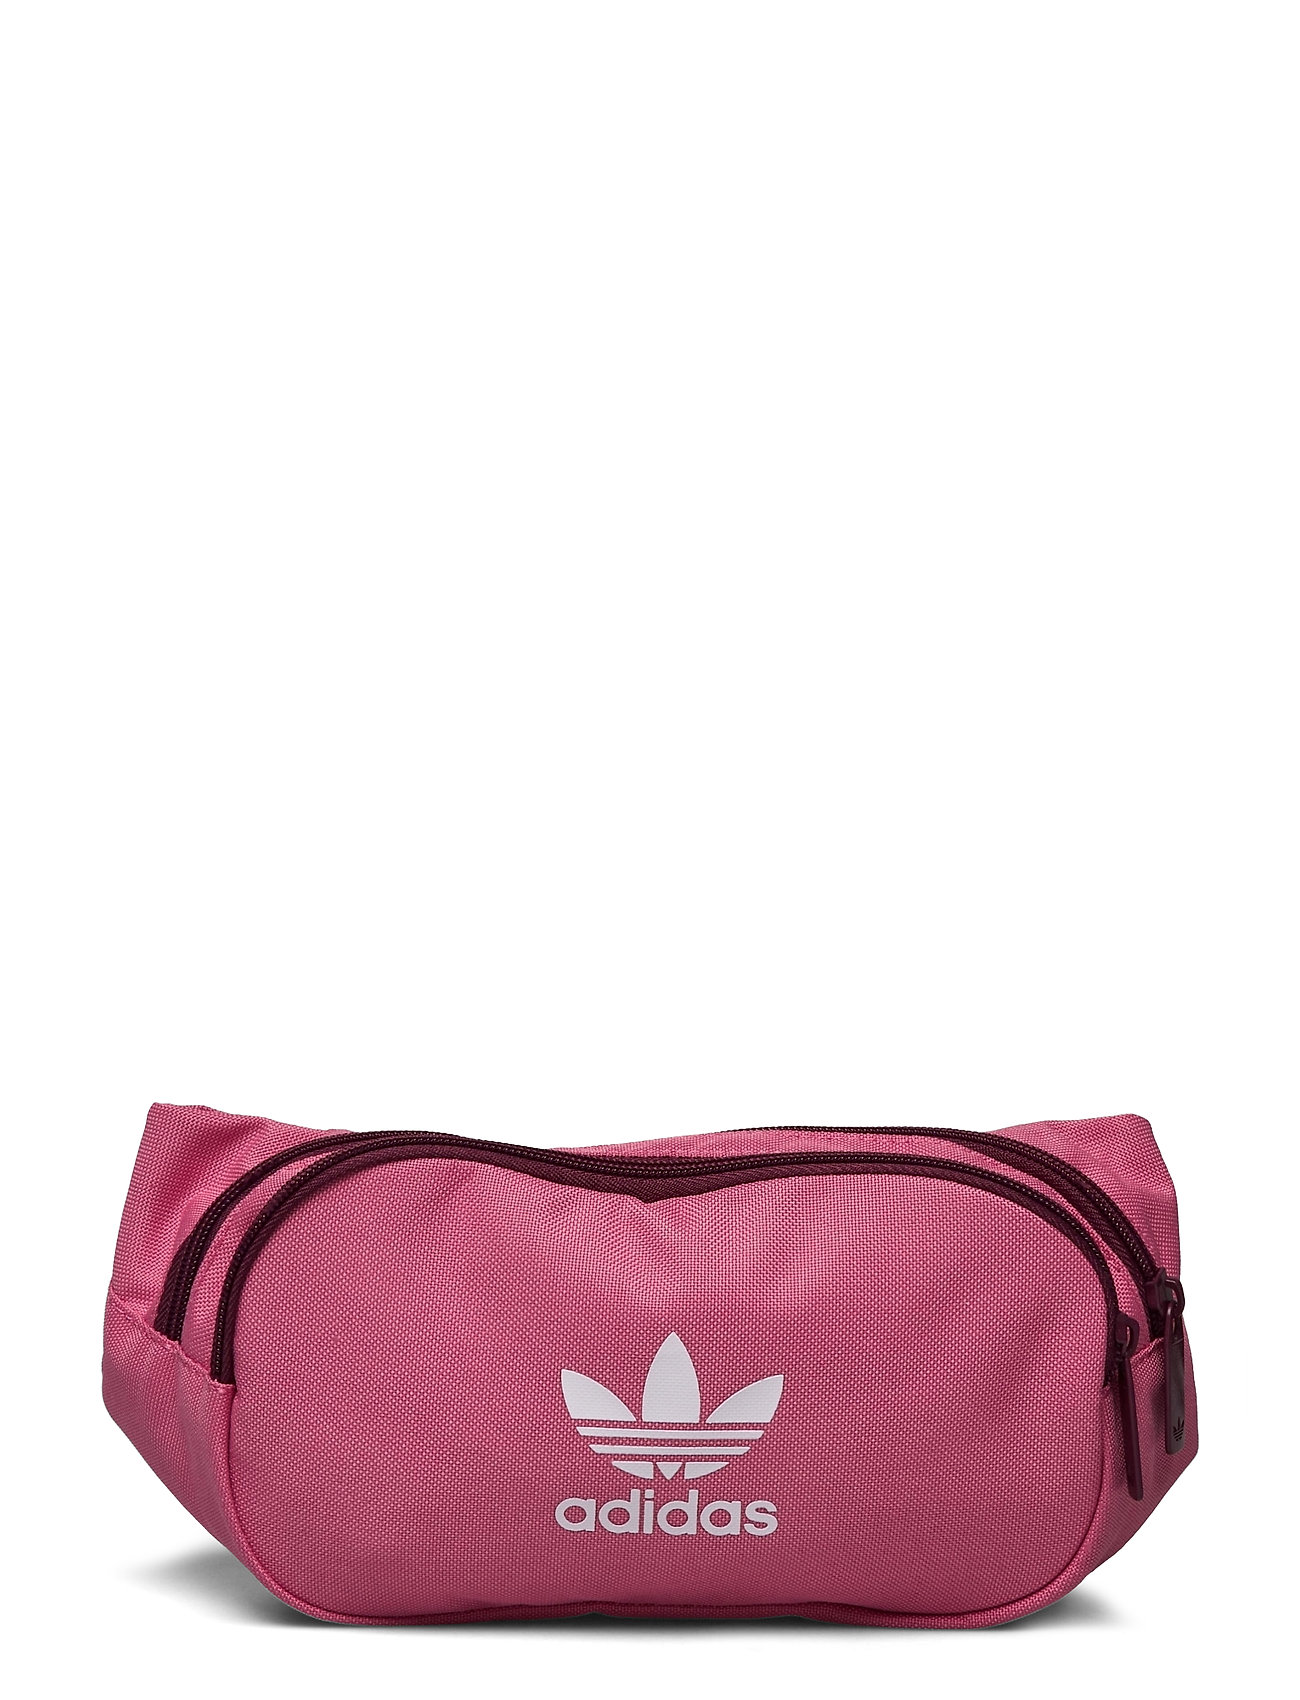 Adidas Adicolor Branded Webbing Waist Bag Bag Taske Lyserød Adidas Originals bæltetasker for herre - Pashion.dk